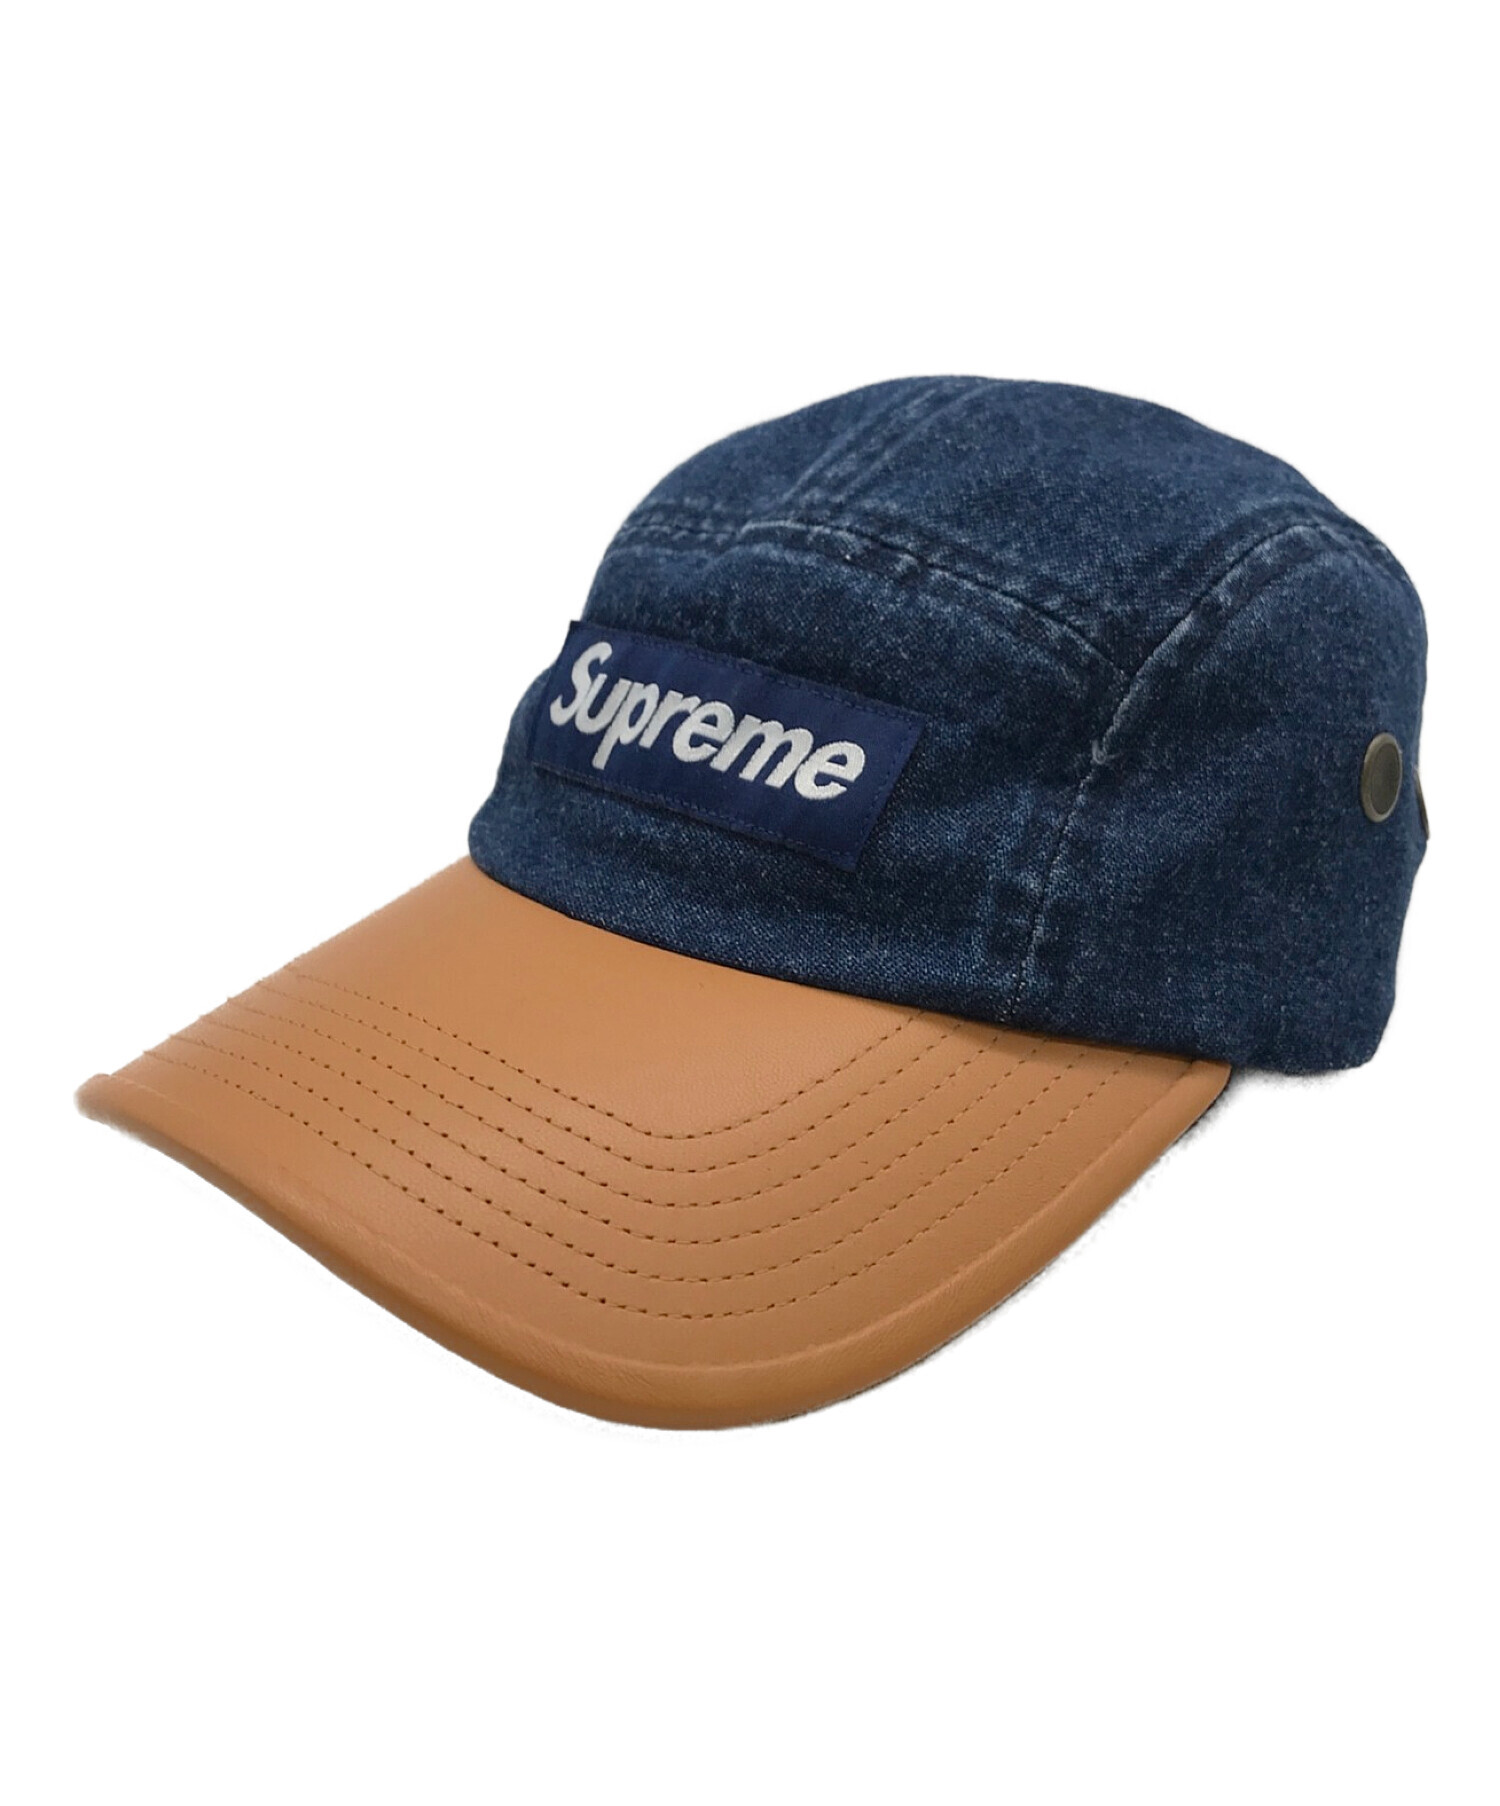 Supreme 2-tone denim camp cap